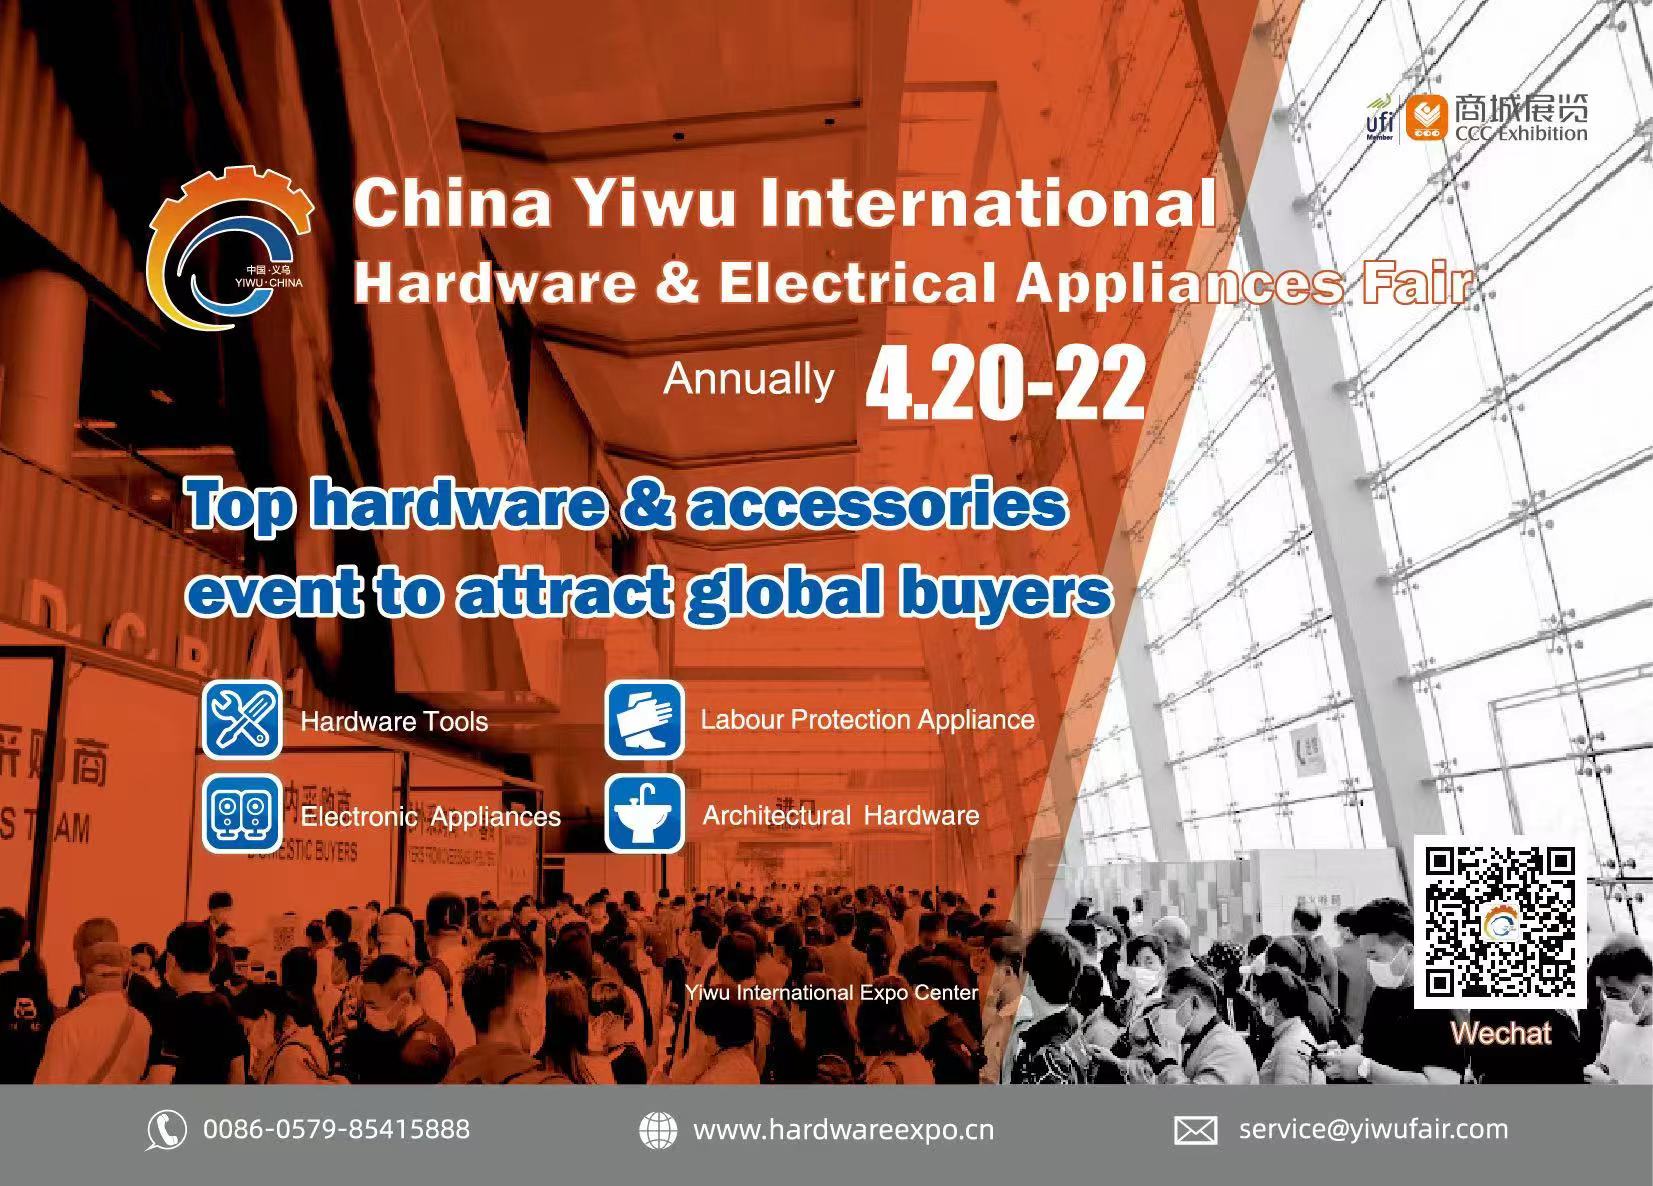 THE 7TH CHINA YIWU INTERNATIONAL HARDWARE & ELECTRICAL APPLIANCES FAIR, Yiwu, Zhejiang, China